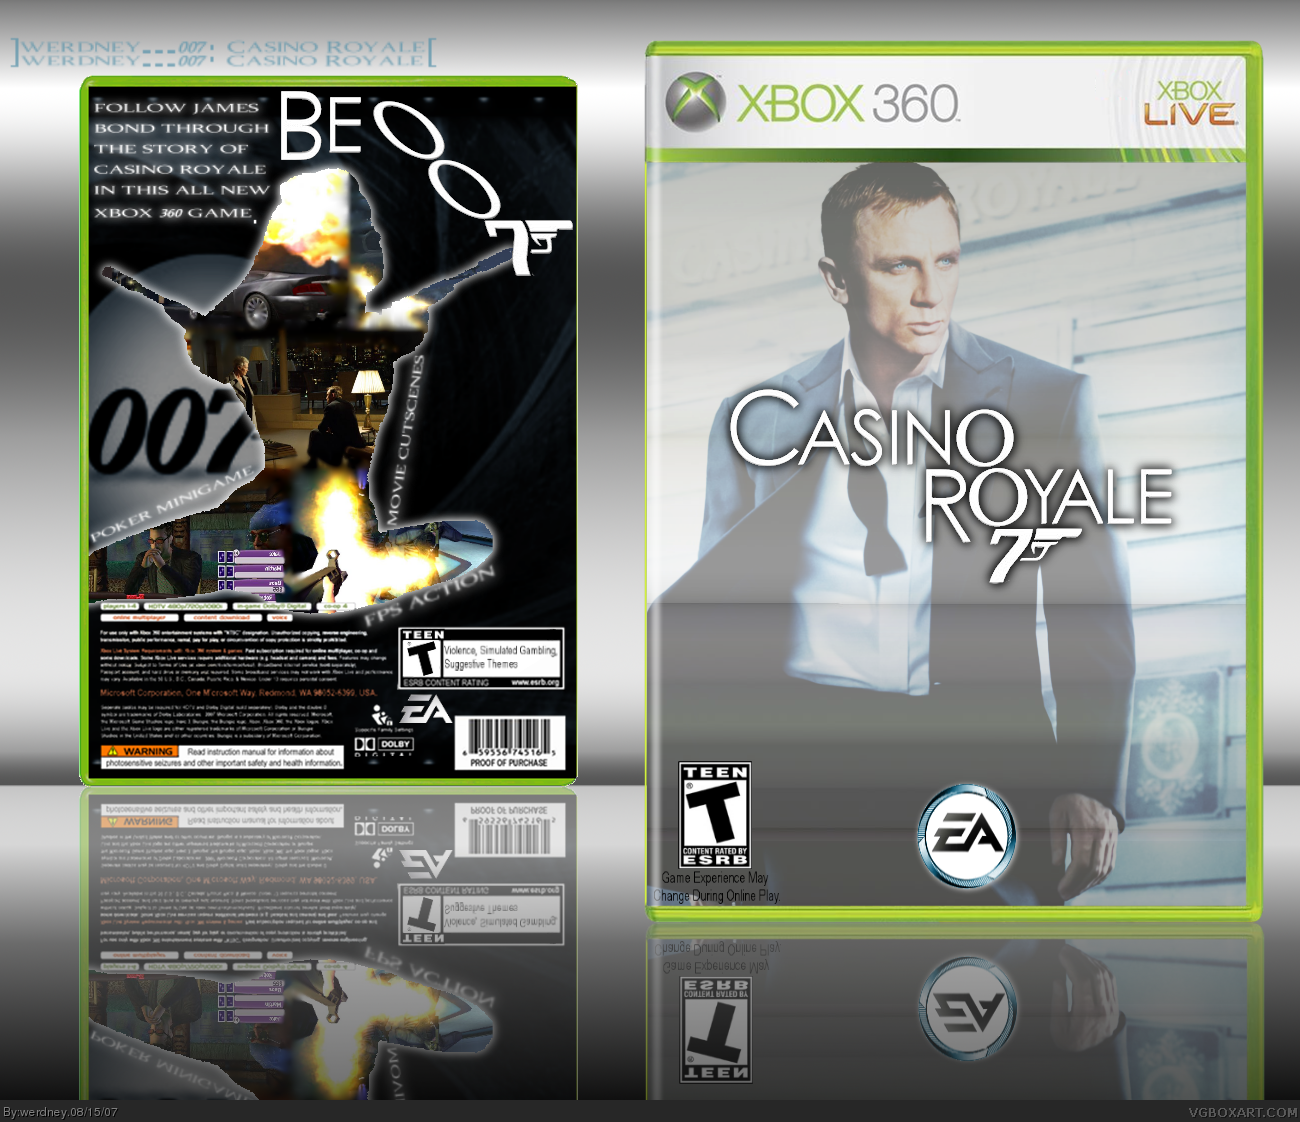 007: Casino Royale box cover